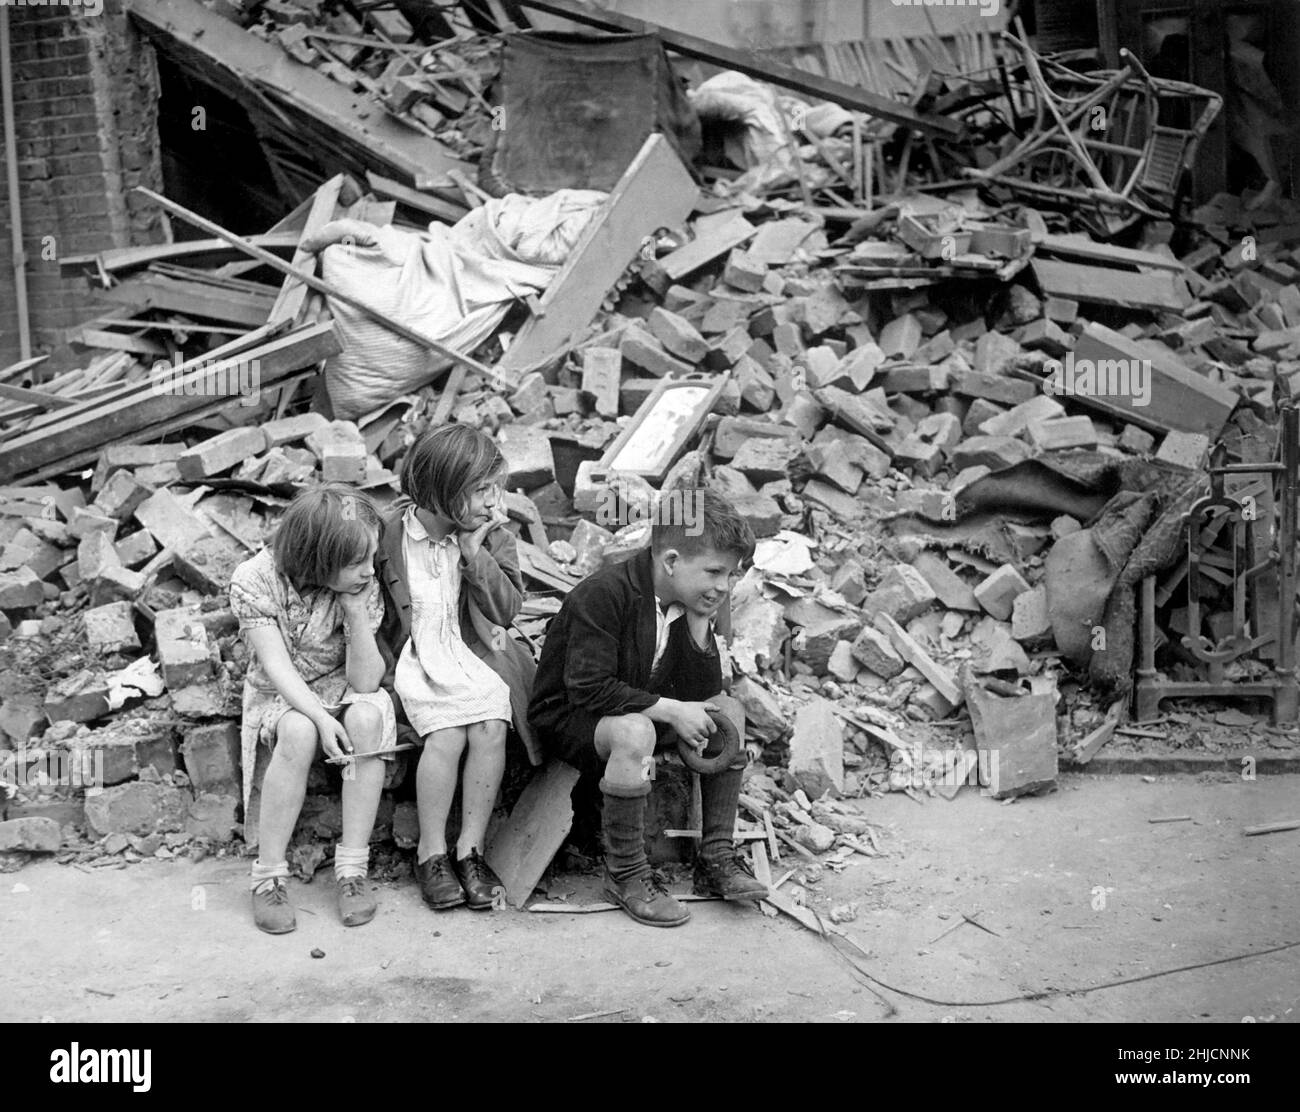 Bambini in un sobborgo orientale di Londra la cui casa è stata distrutta nel Blitz, settembre 1940. Il Blitz fu una campagna di bombardamento tedesca contro il Regno Unito nel 1940 e nel 1941, durante la seconda guerra mondiale. Il termine deriva da Blitzkrieg, che significa "guerra dei fulmini" in tedesco. Foto Stock